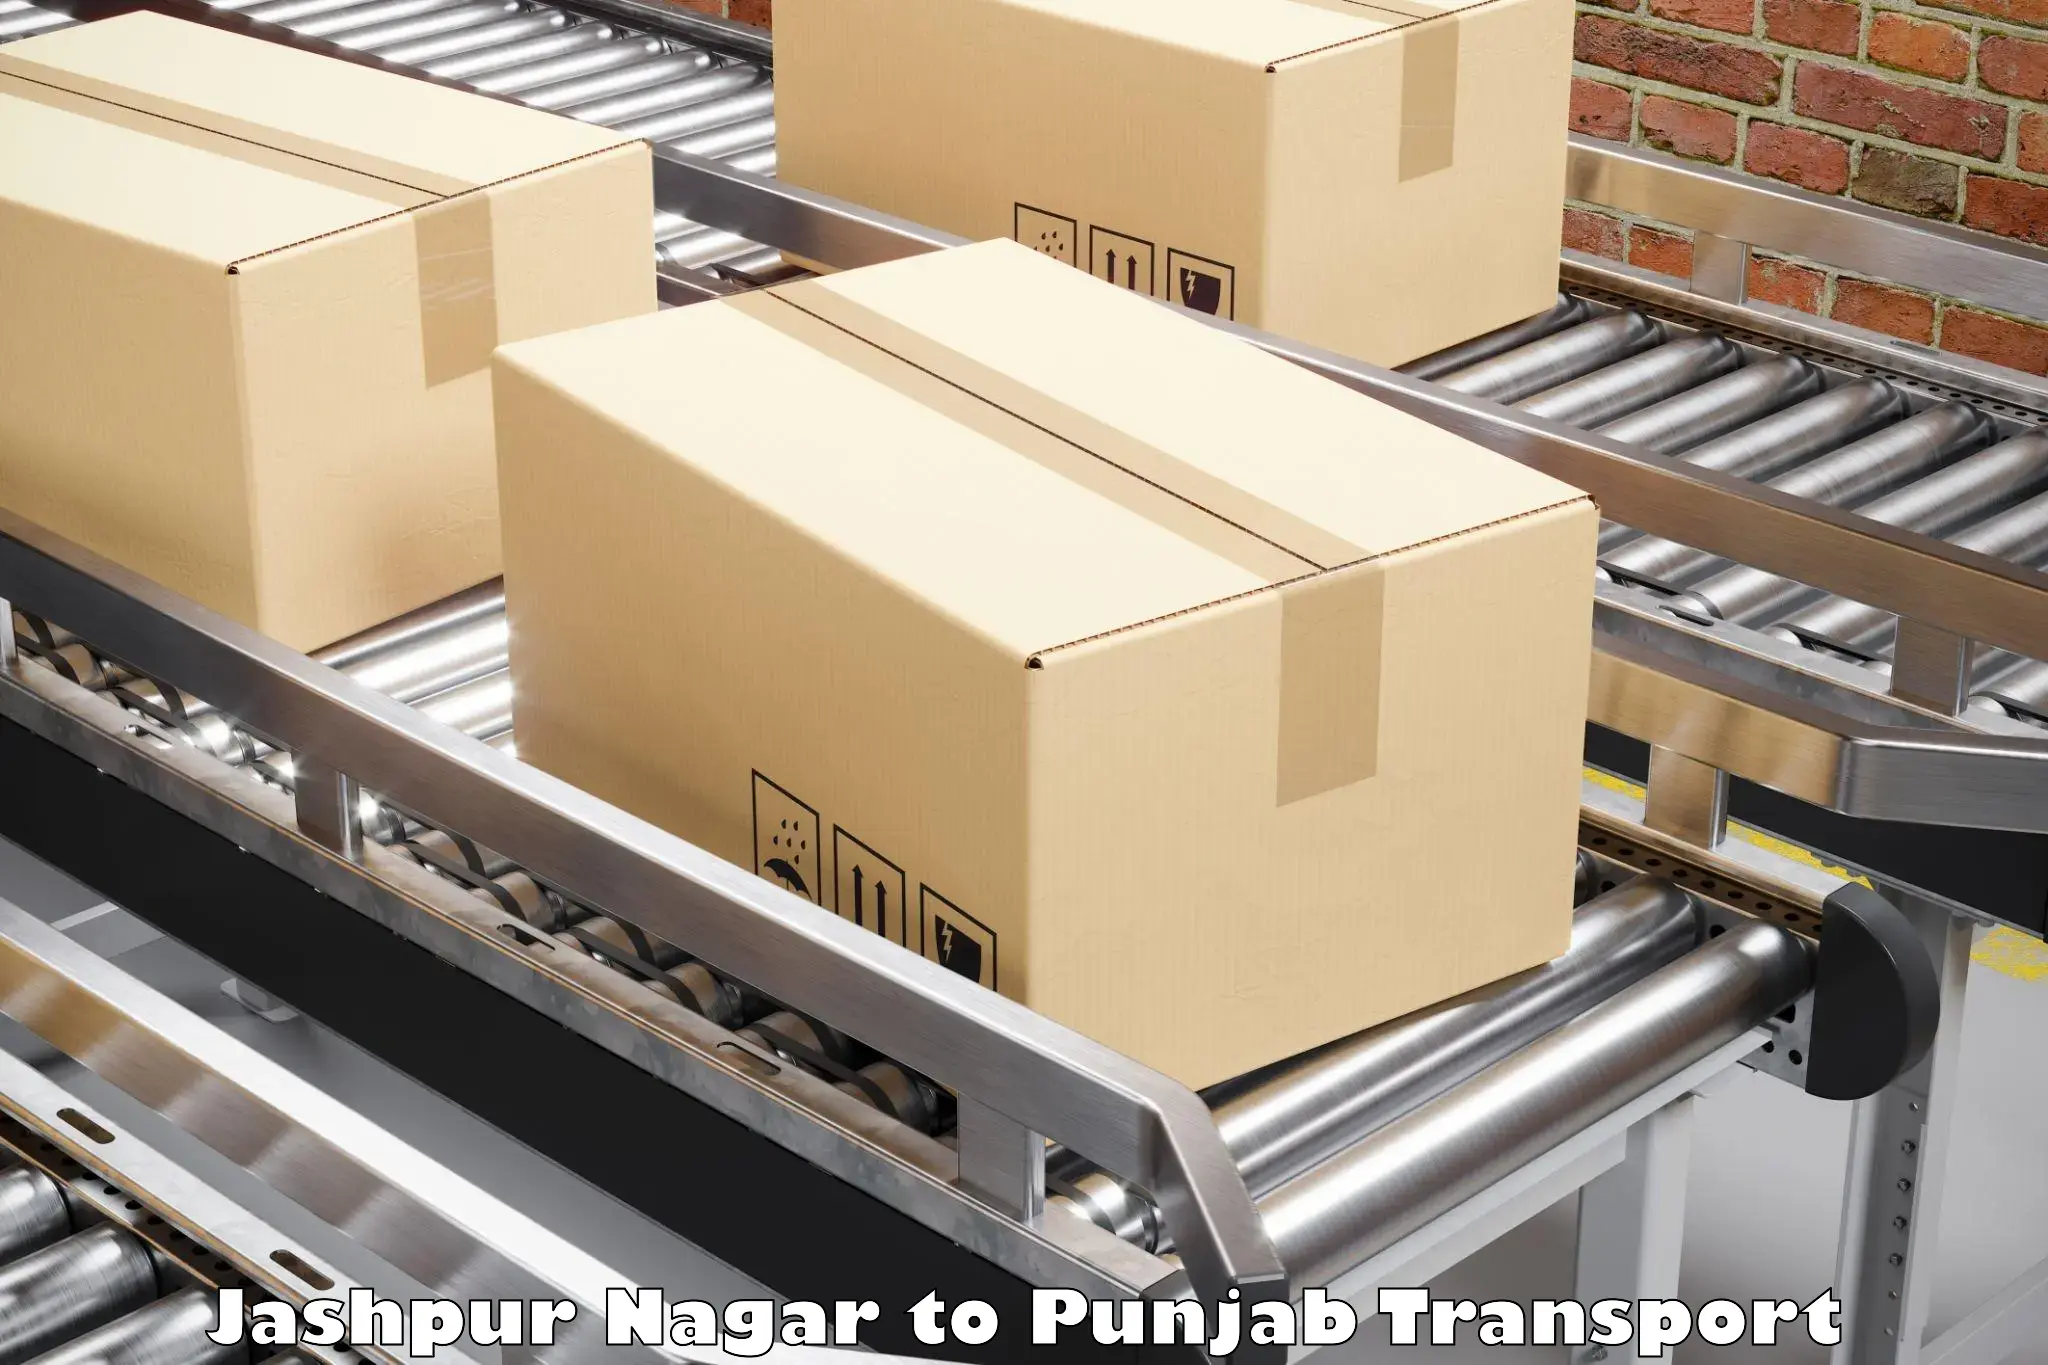 Transport services Jashpur Nagar to Dasuya